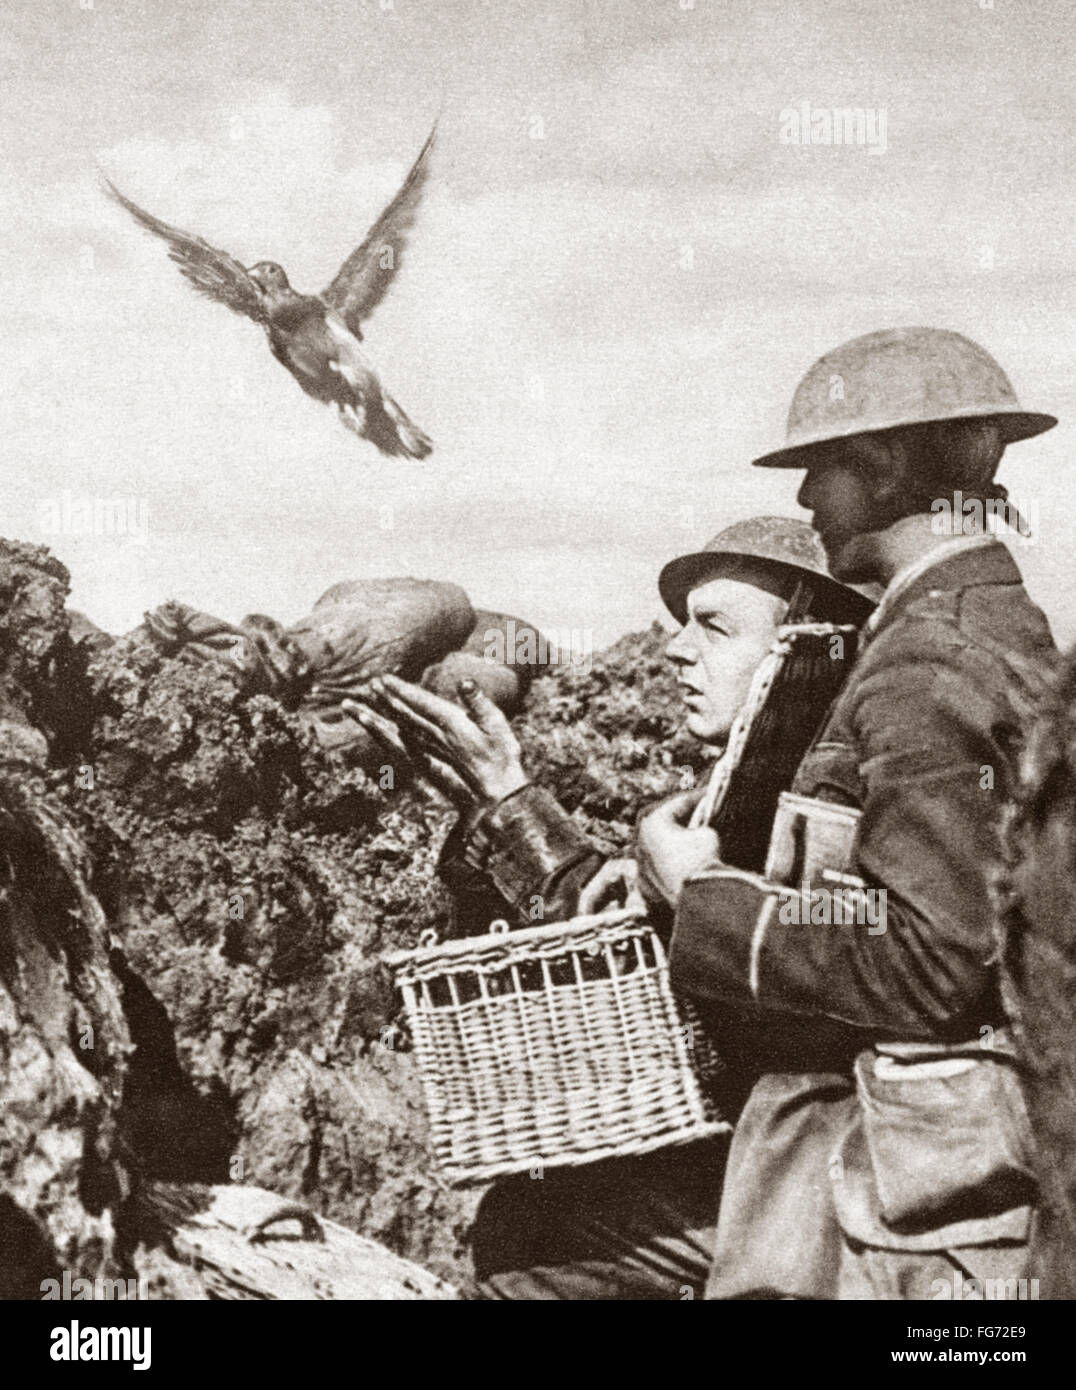 WWI: palomas mensajeras. /NA paloma mensajera de ser liberados para llevar un mensaje a la sede francesa durante la I Guerra Mundial Fotografía, c1916. Foto de stock